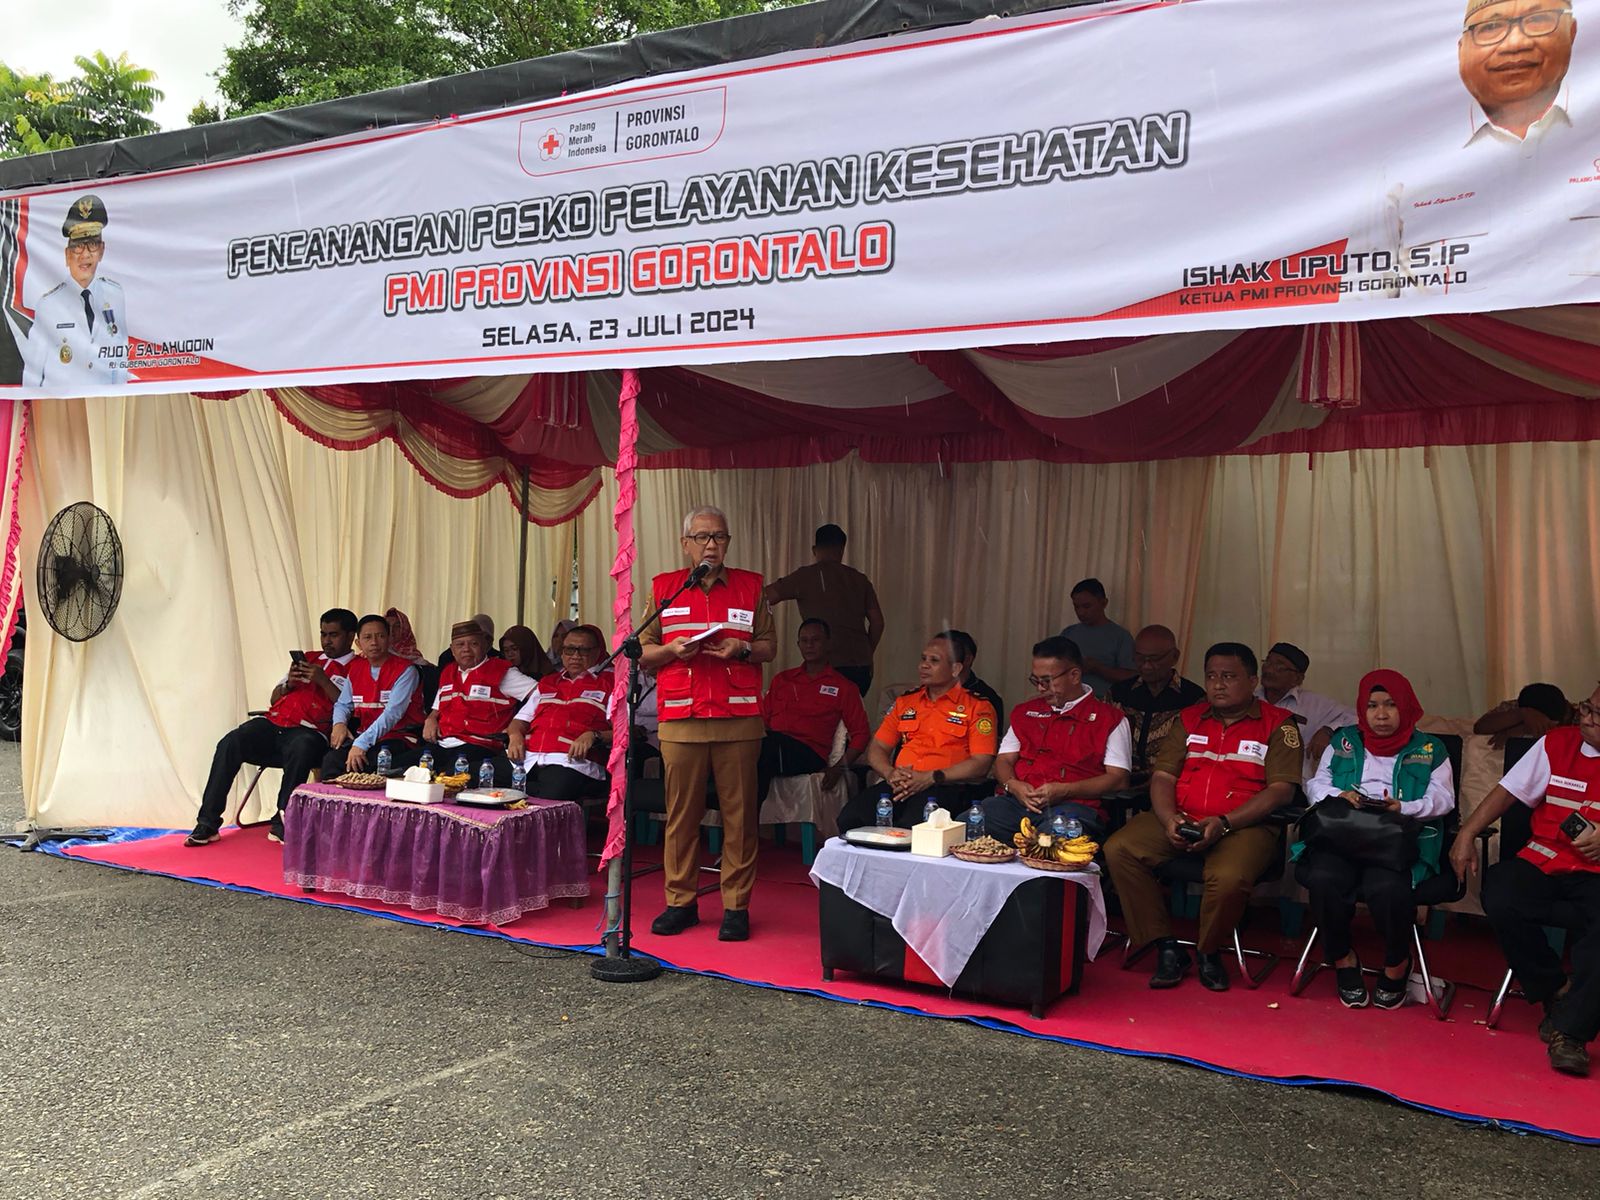  Posko Pelayanan Kesehatan PMI Provinsi Gorontalo Resmi Beroperasi